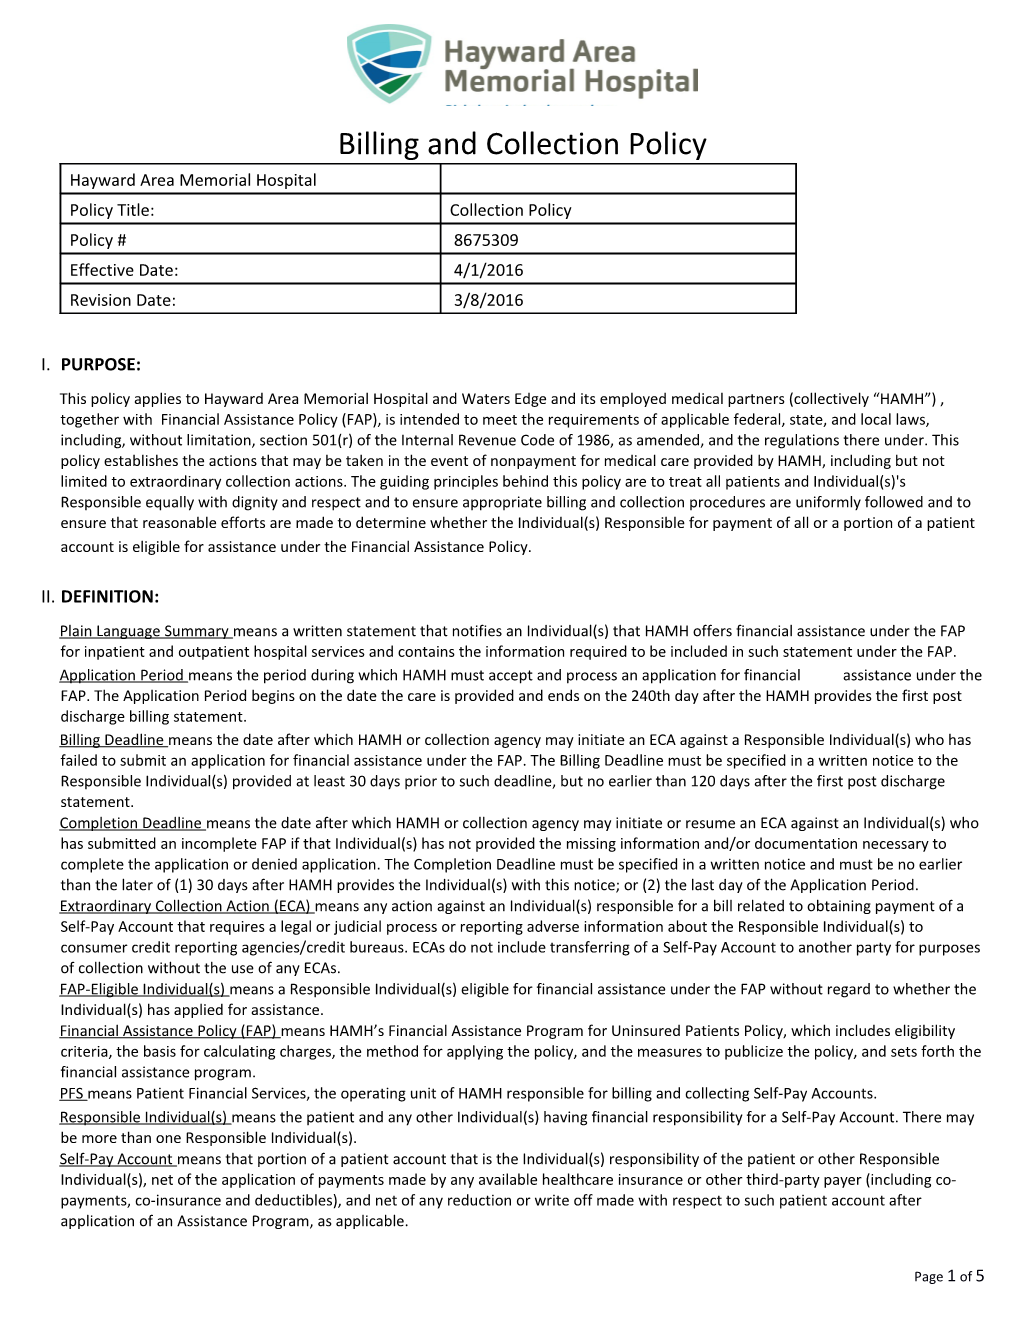 Transparency Taskfoce Draft ACA 501R Toolkit